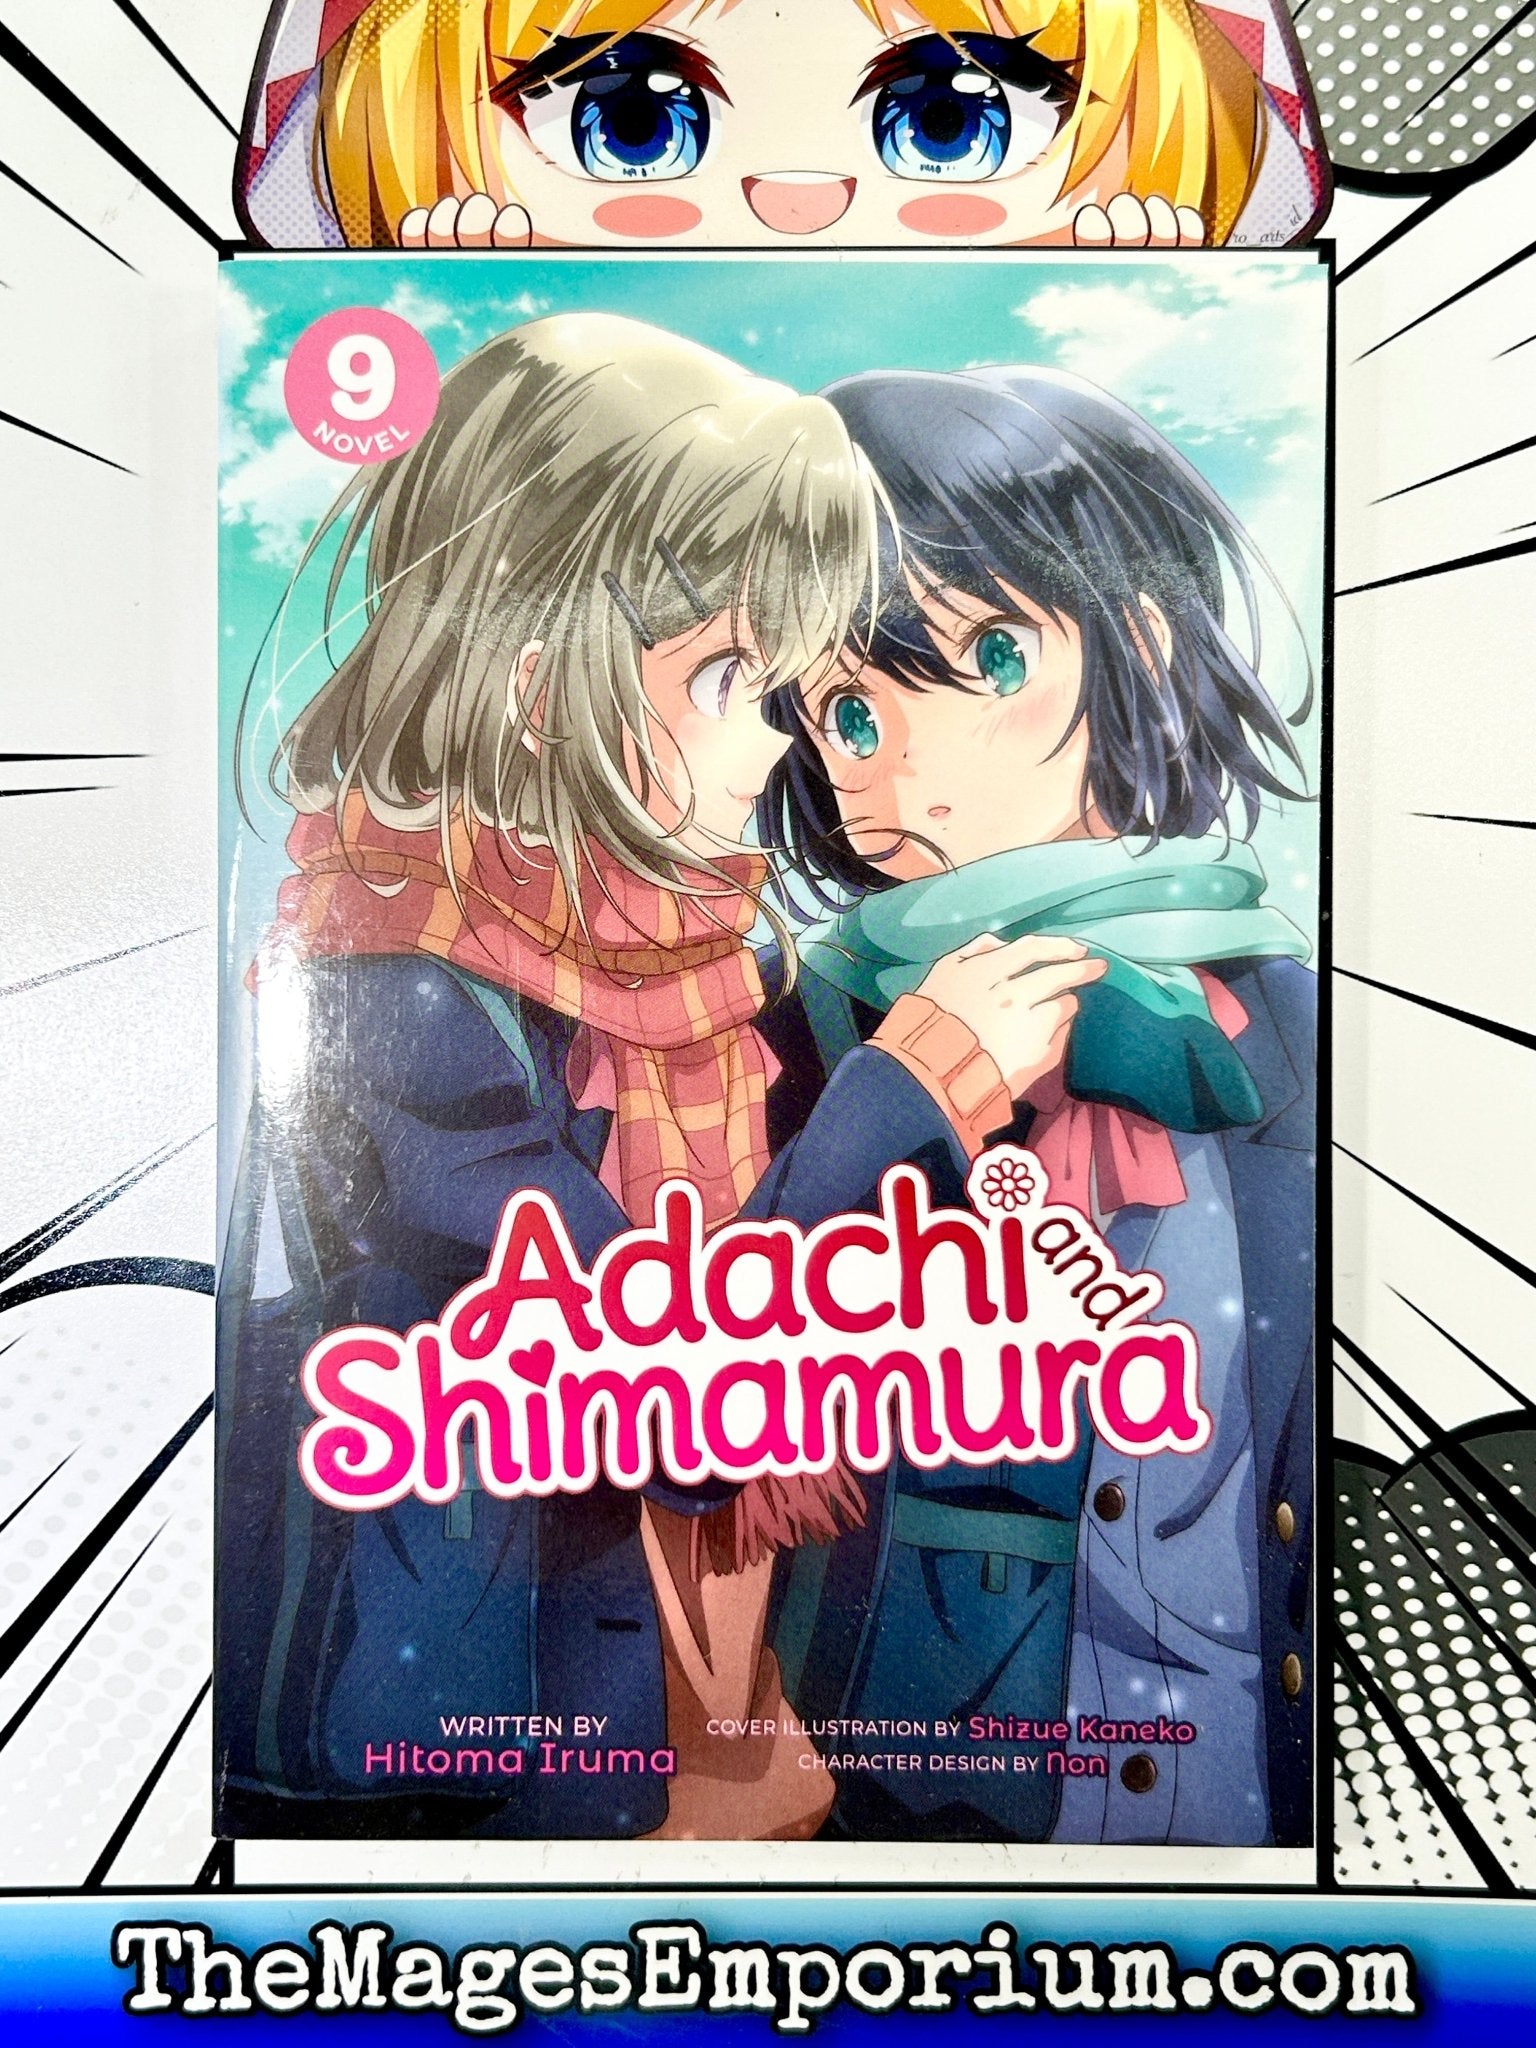 Adachi and Shimamura (Light Novel) Vol. 9 (Paperback)